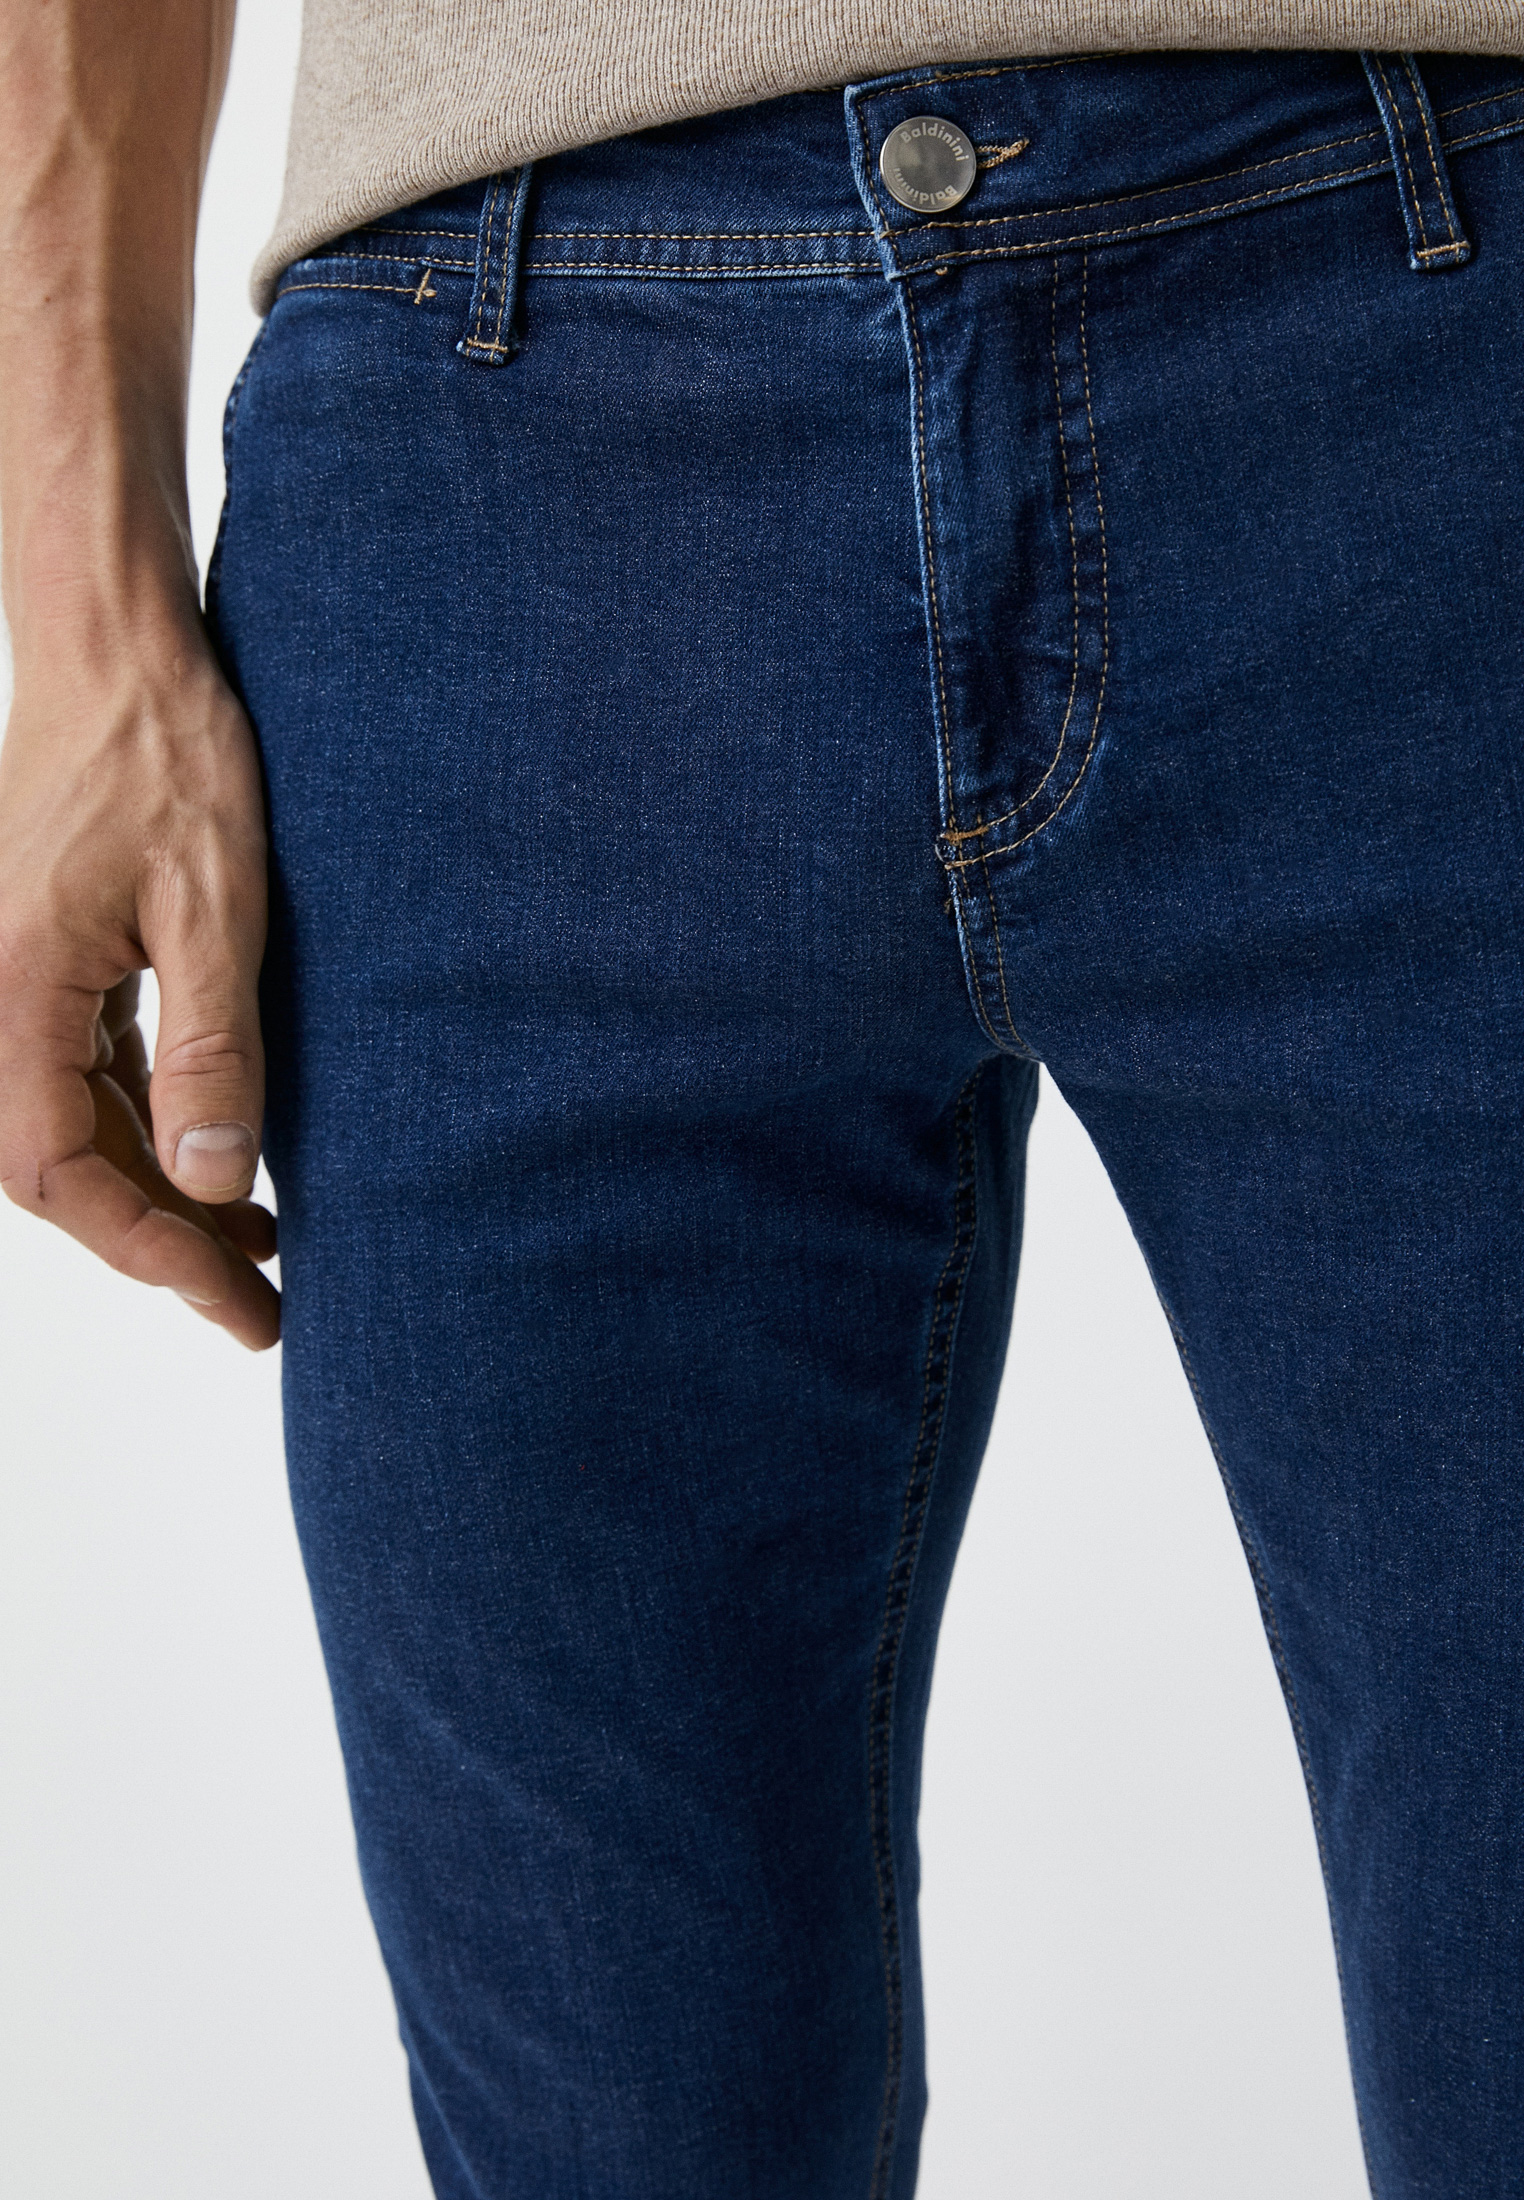 Мужские зауженные джинсы Baldinini (Балдинини) MJ103: изображение 4